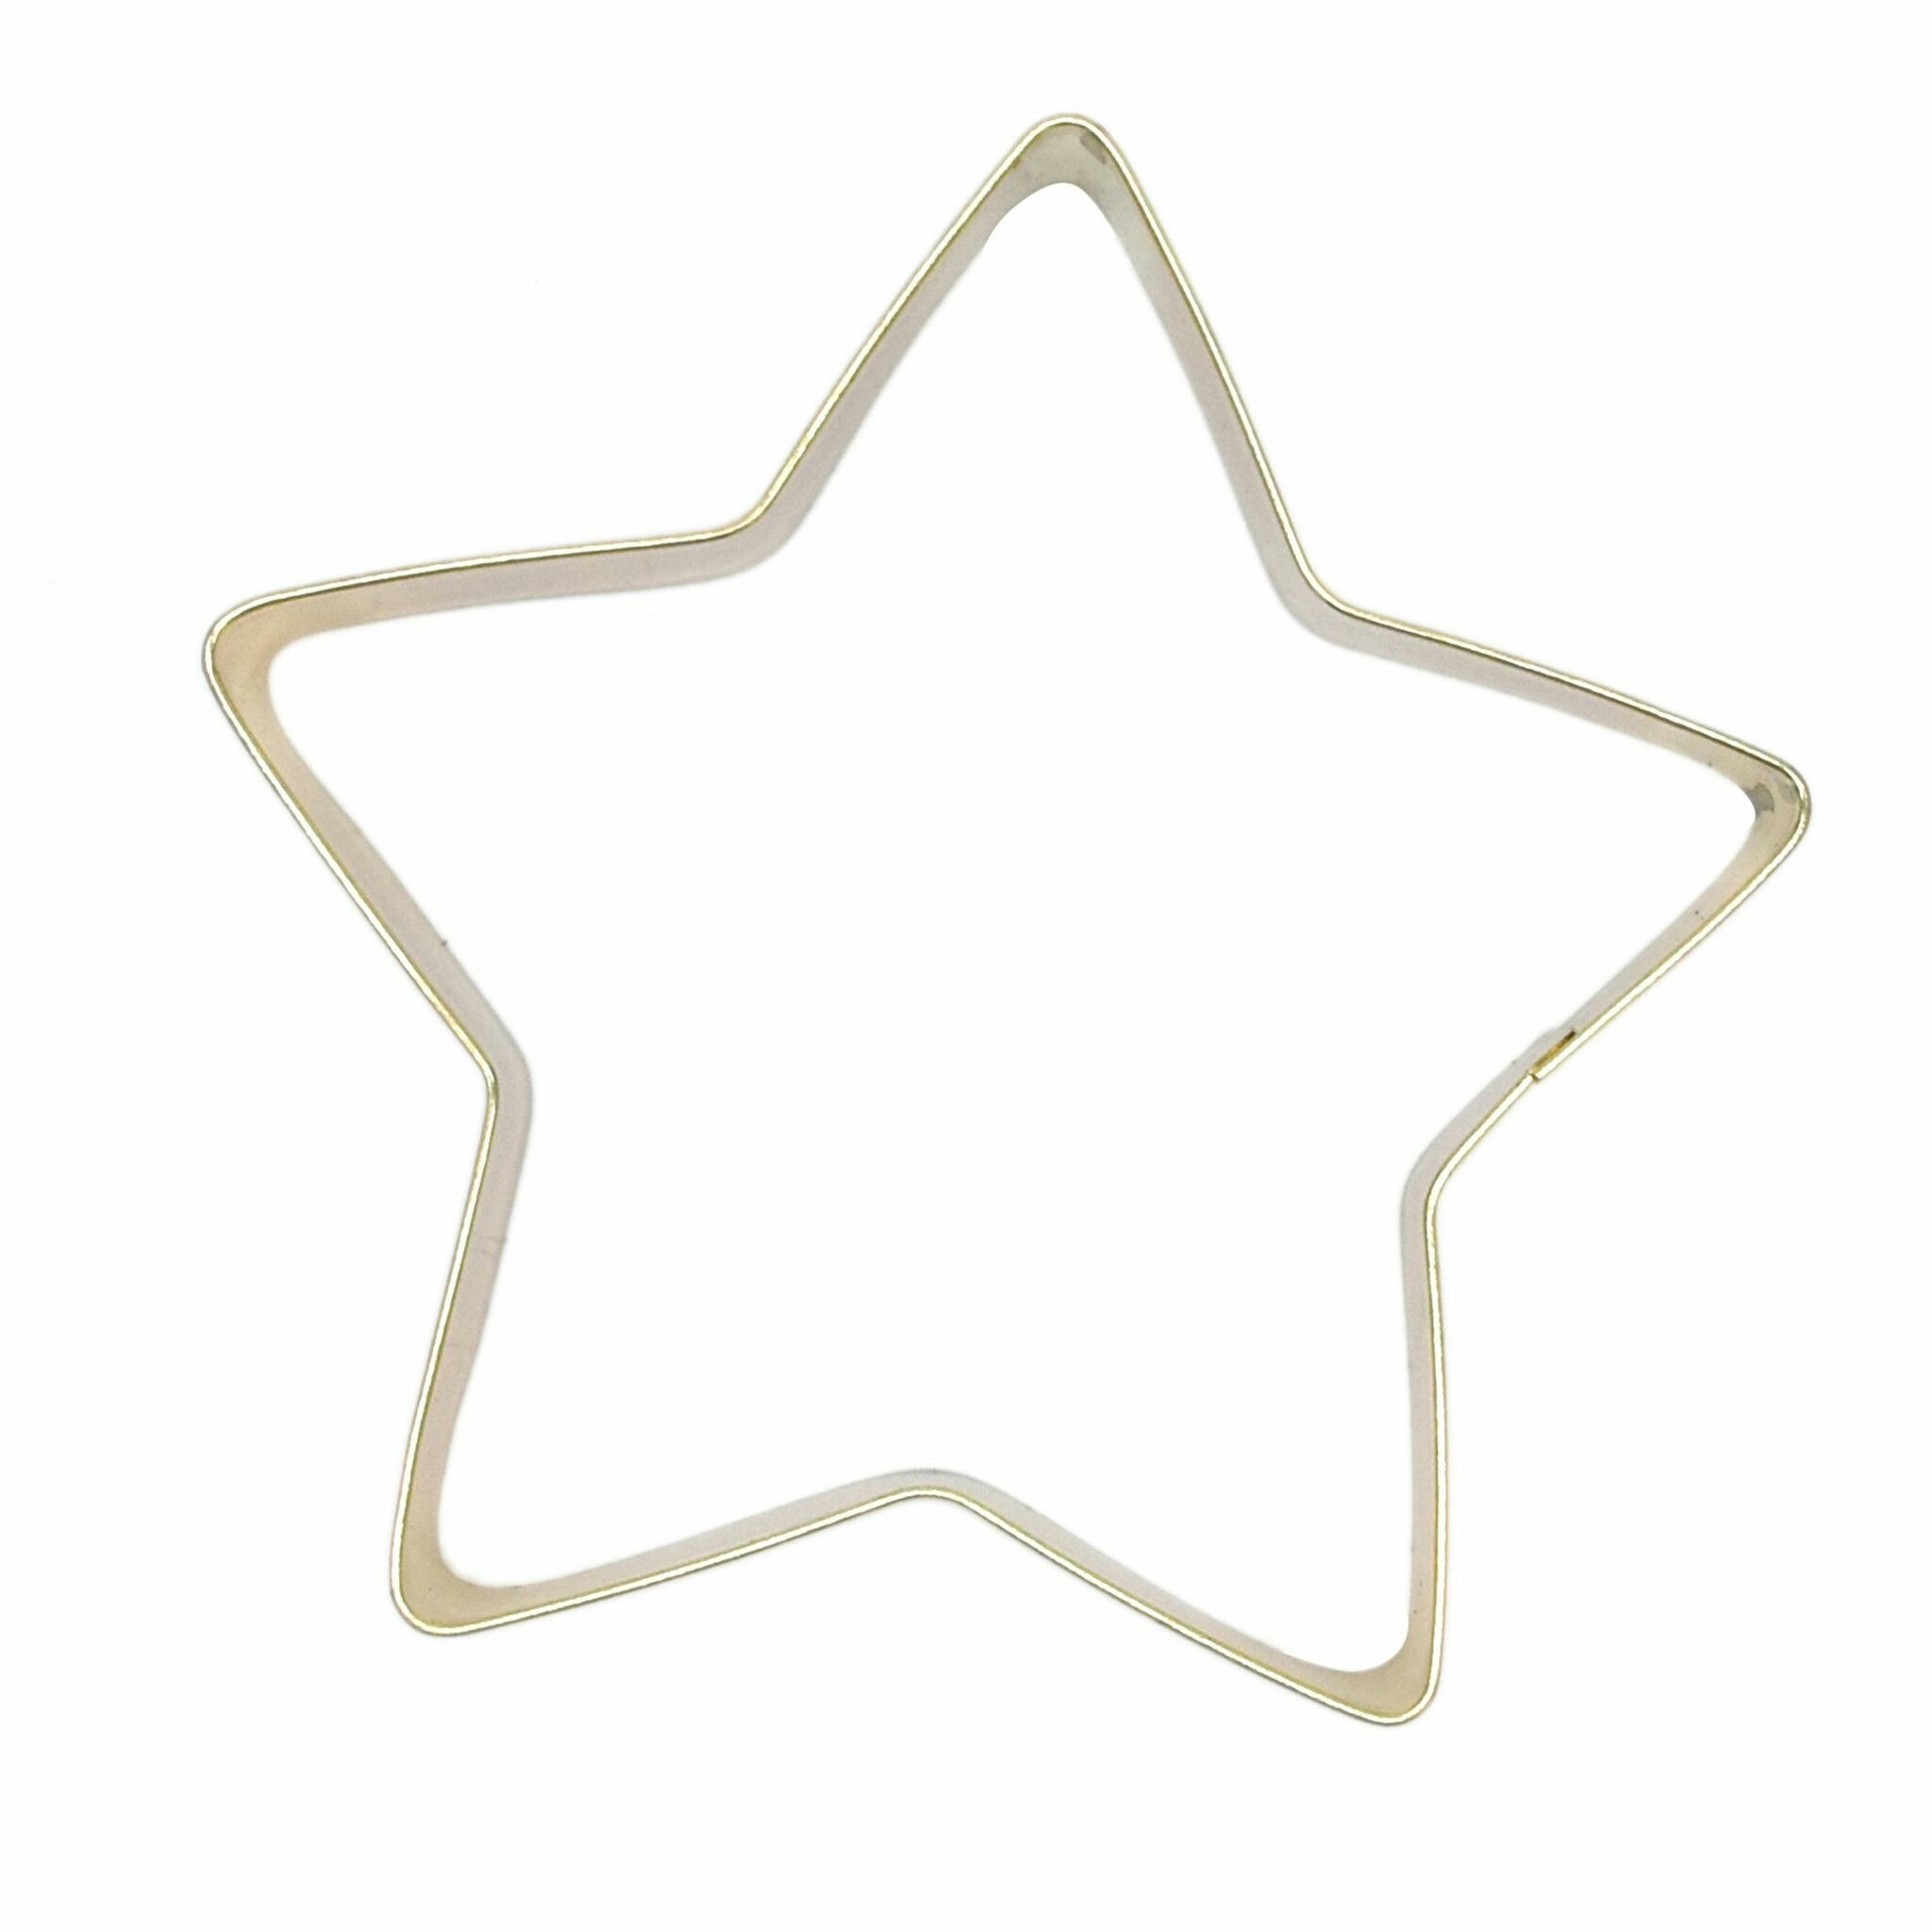 Gold Stjärna en pepparkaksmått/form från Modern house. Färg: Guld.